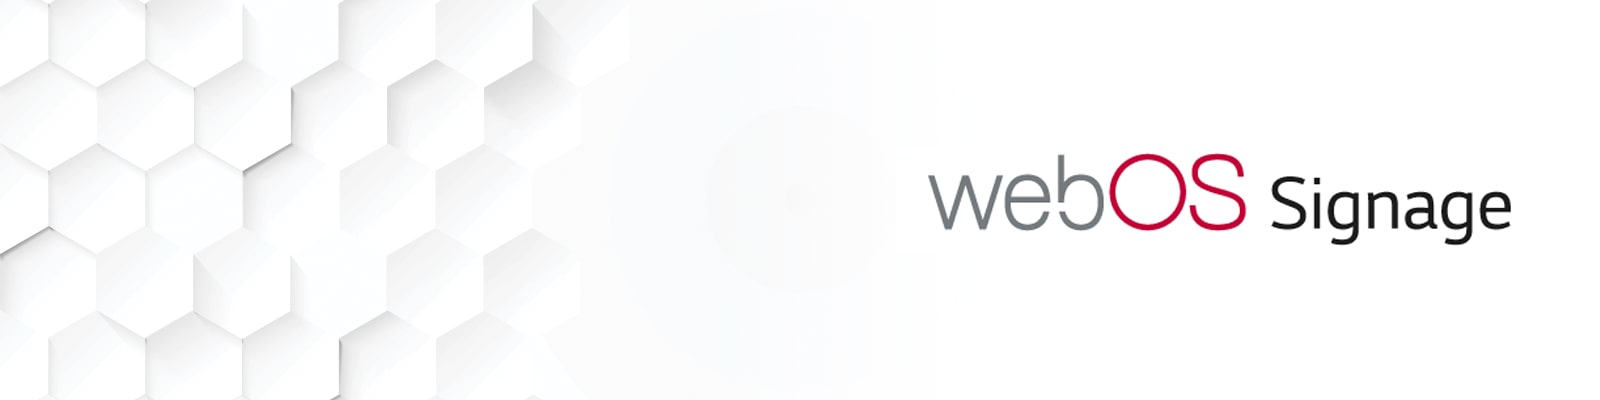 webOS™ Signage Partners